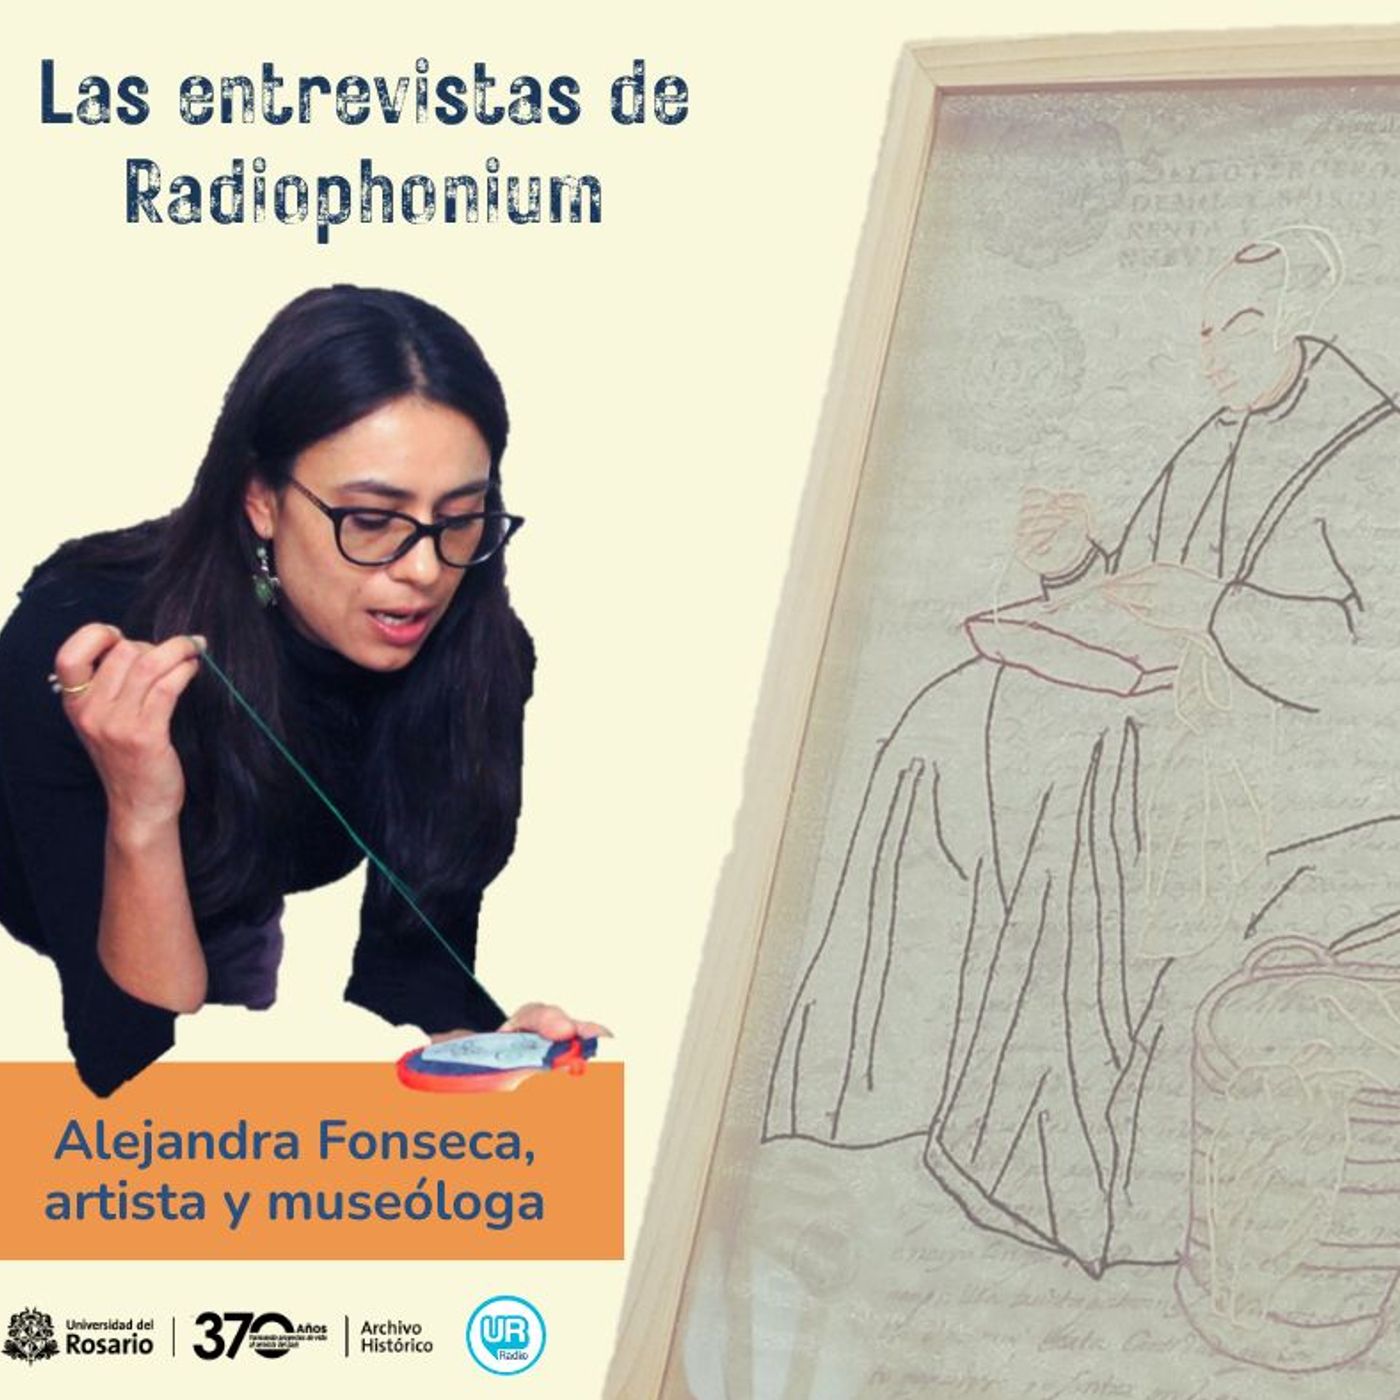 Alejandra Fonseca artista y museóloga